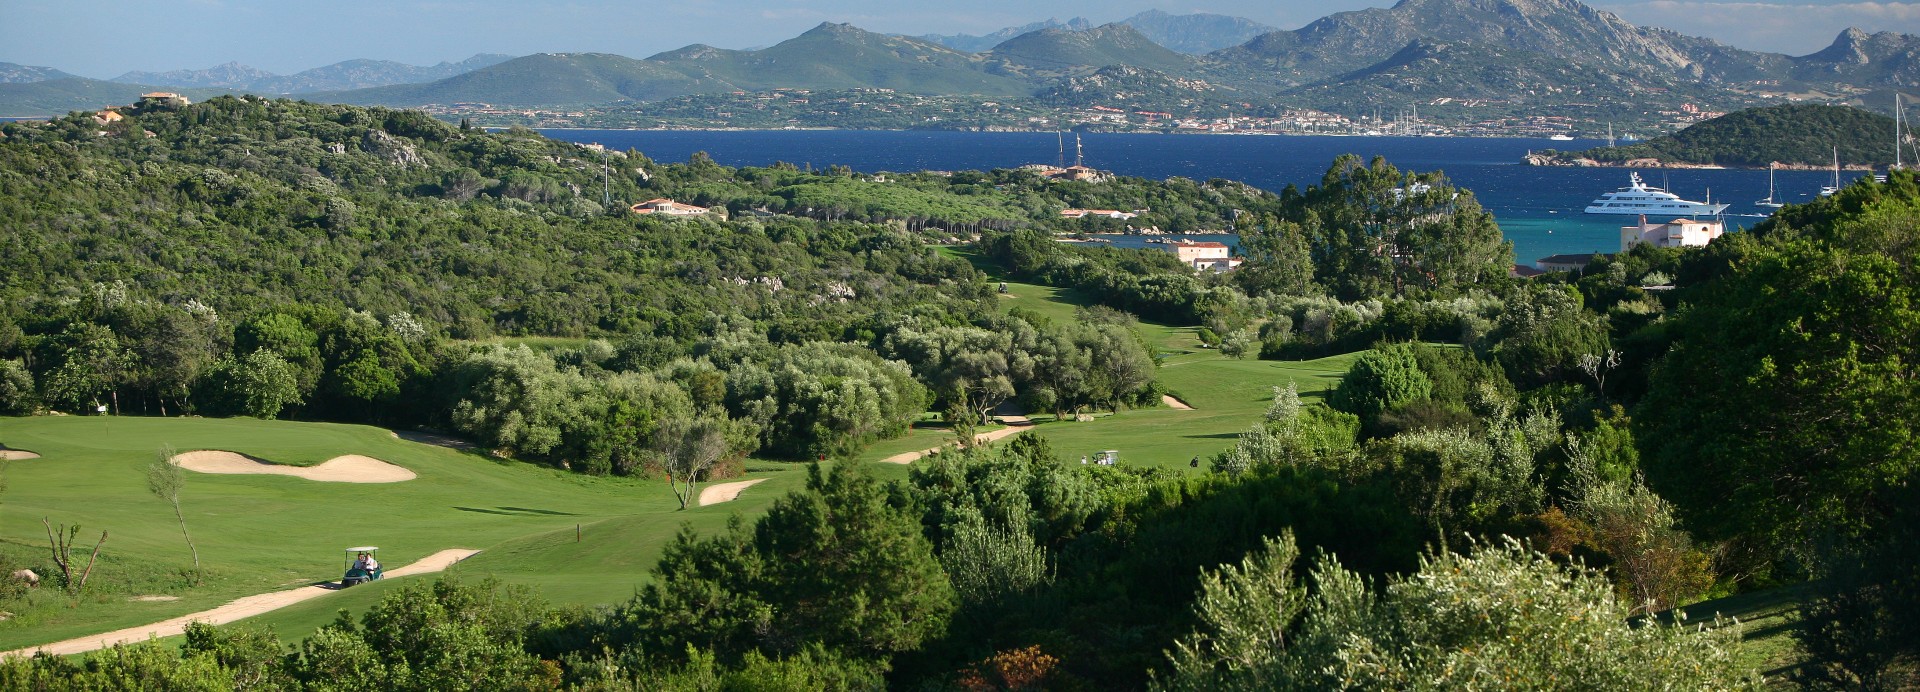 Pevero Golf Club  | Golfové zájezdy, golfová dovolená, luxusní golf